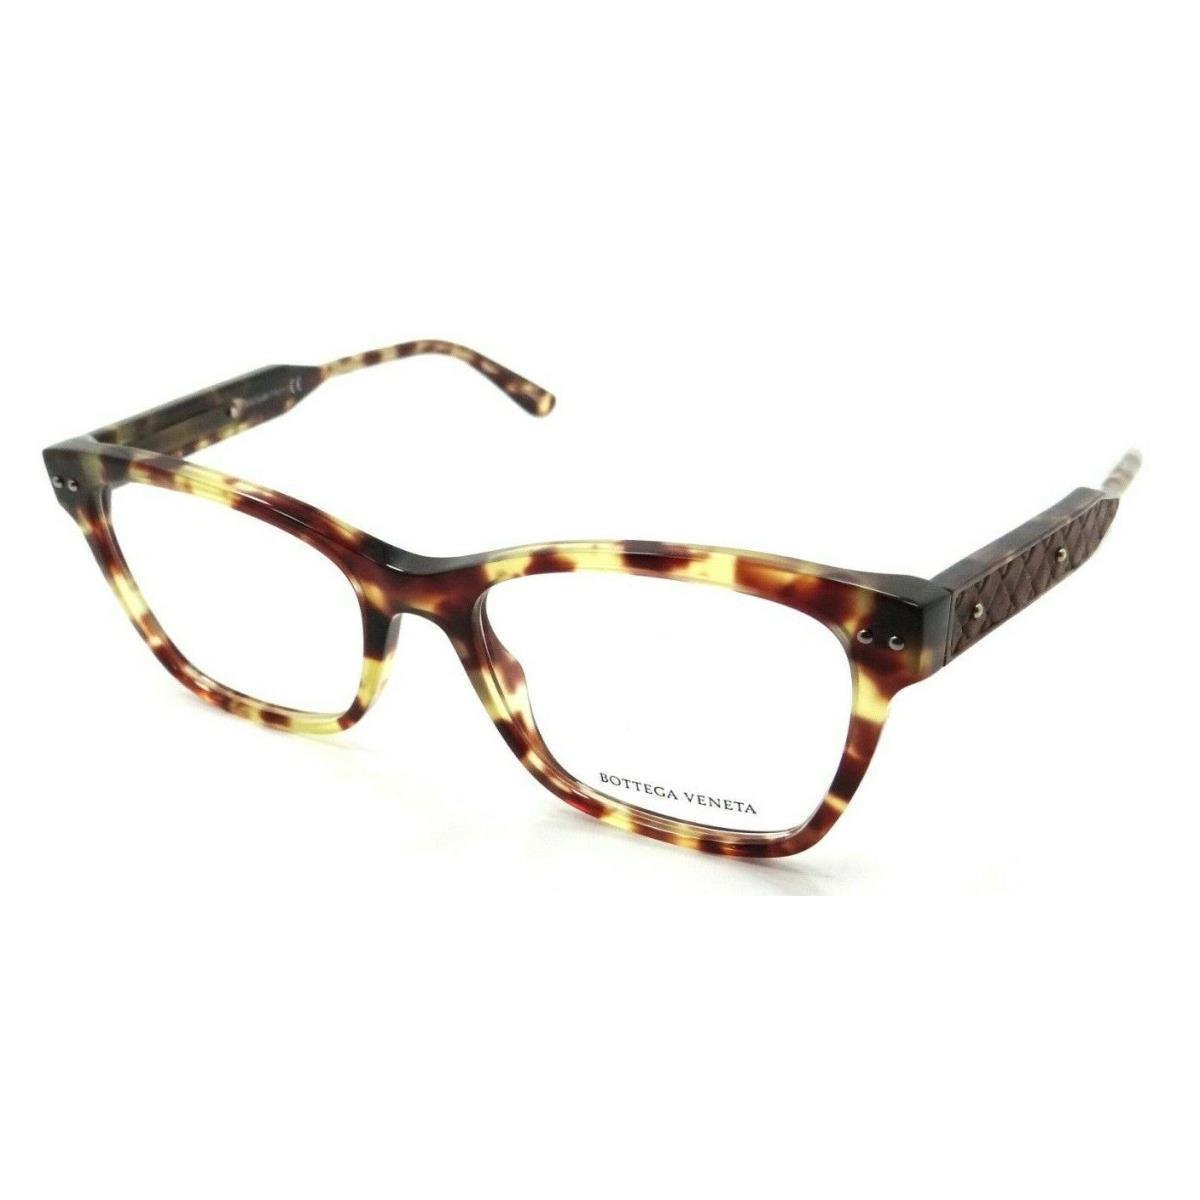 Bottega Veneta Eyeglasses Frames BV0016O 009 51-17-145 Havana Made in Italy - Frame: